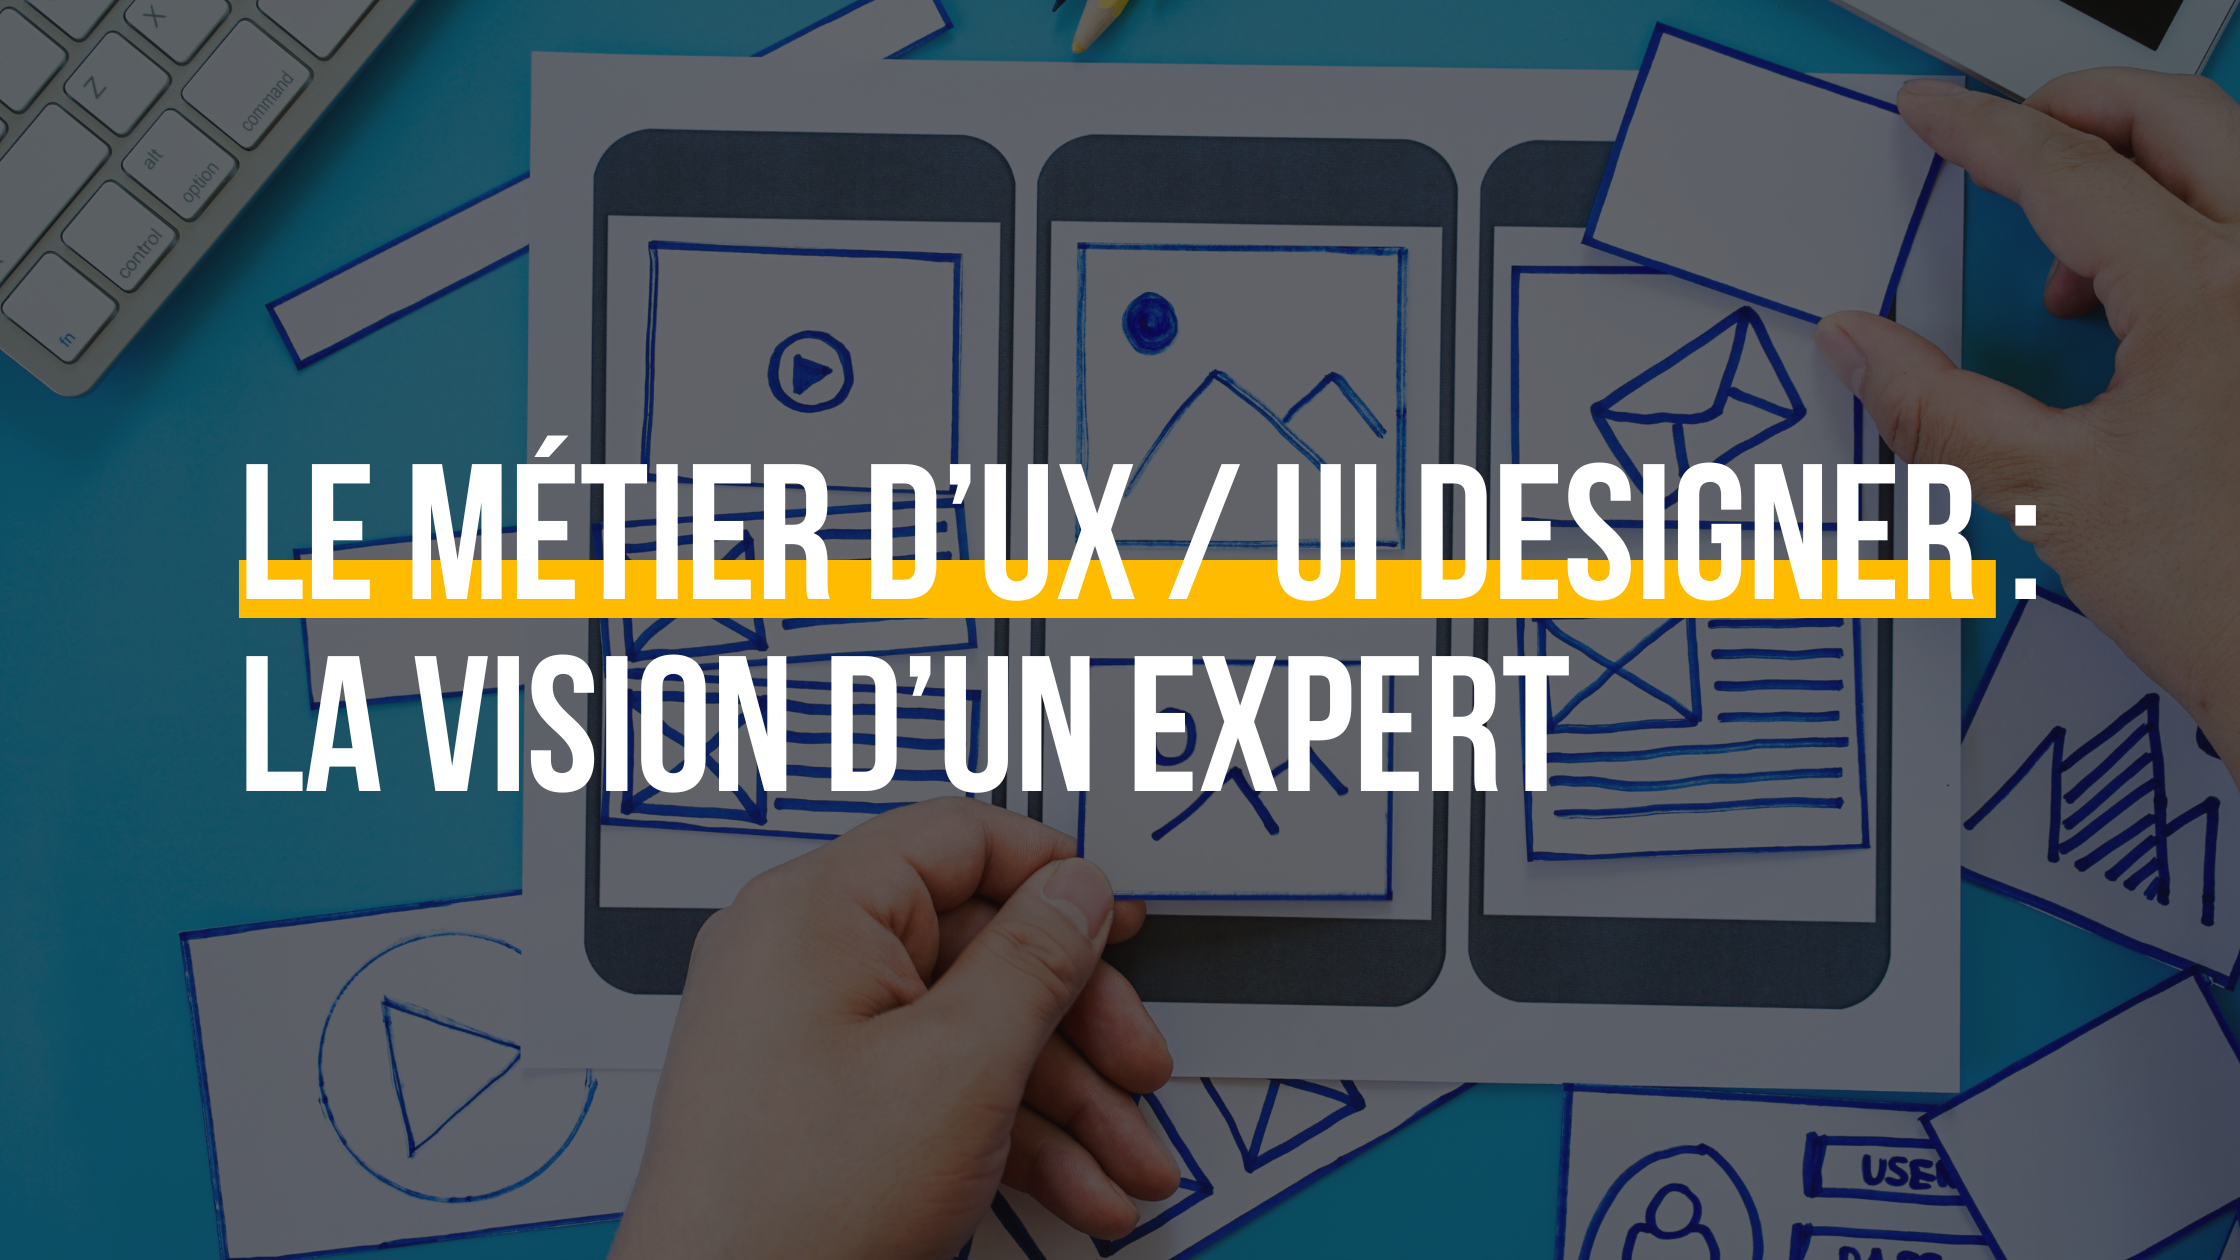 Le métier d’UX / UI Designer : la vision d’un expert